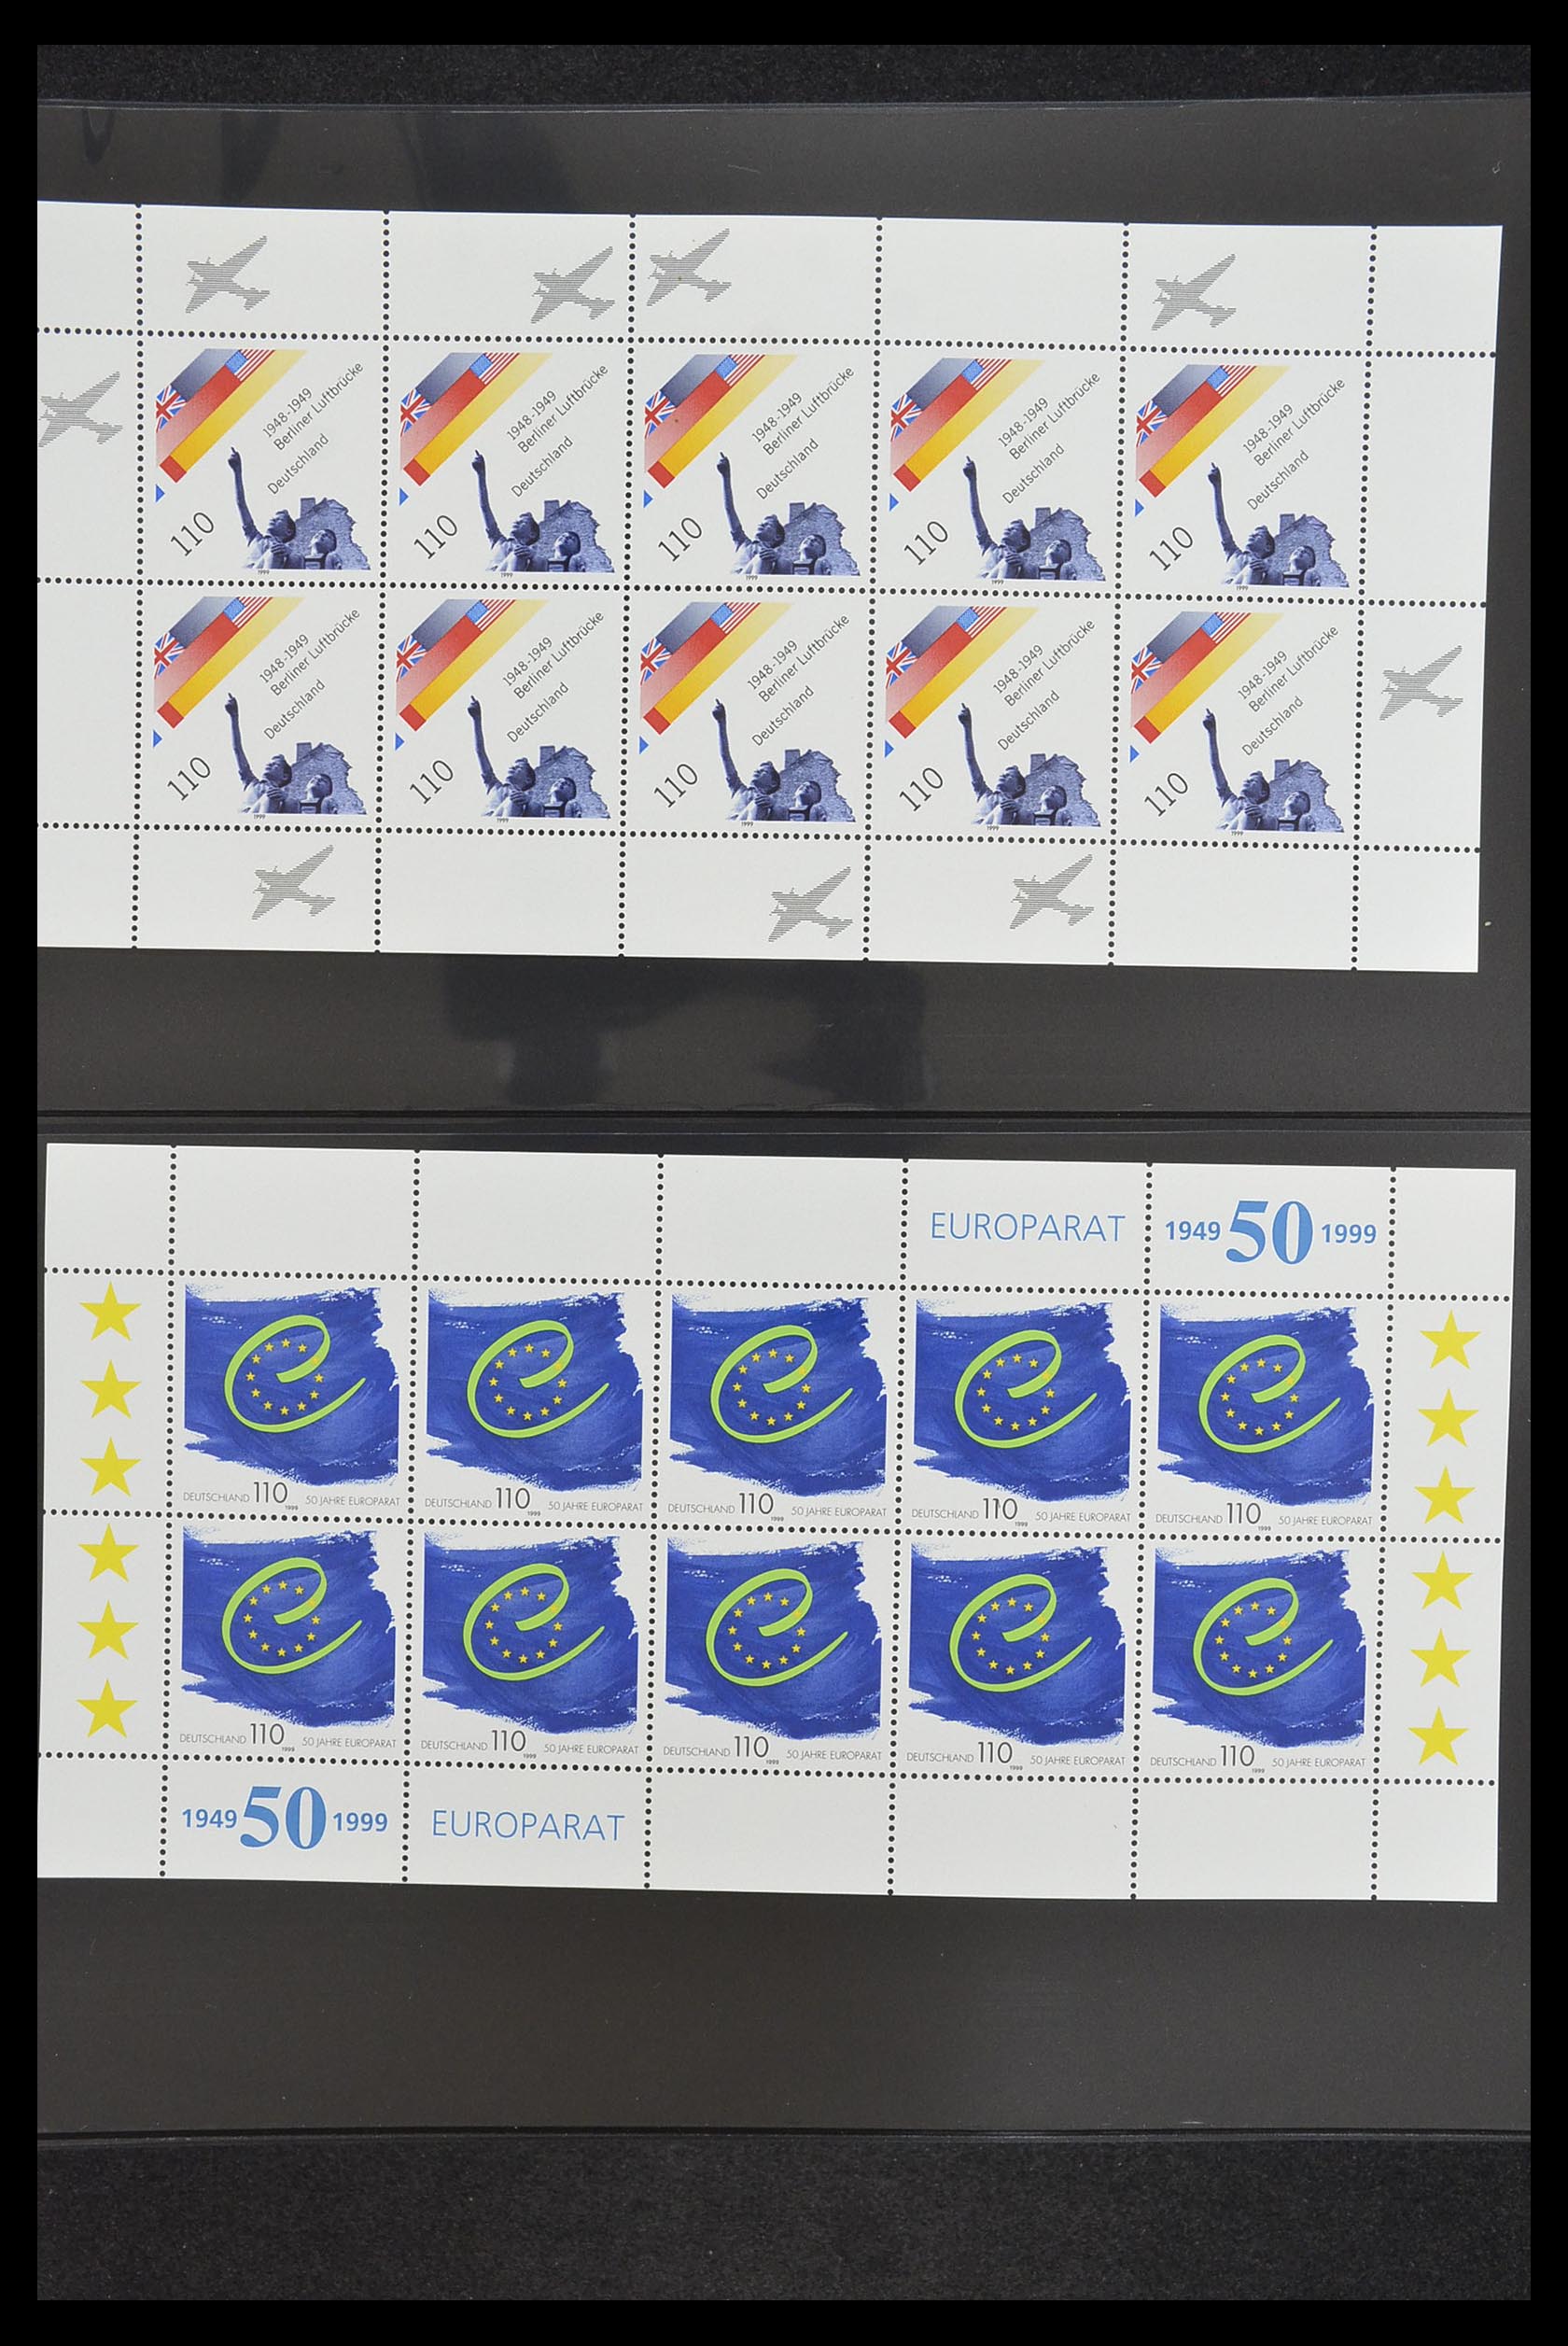 33936 131 - Stamp collection 33936 Bundespost kleinbogen 1994-2000.